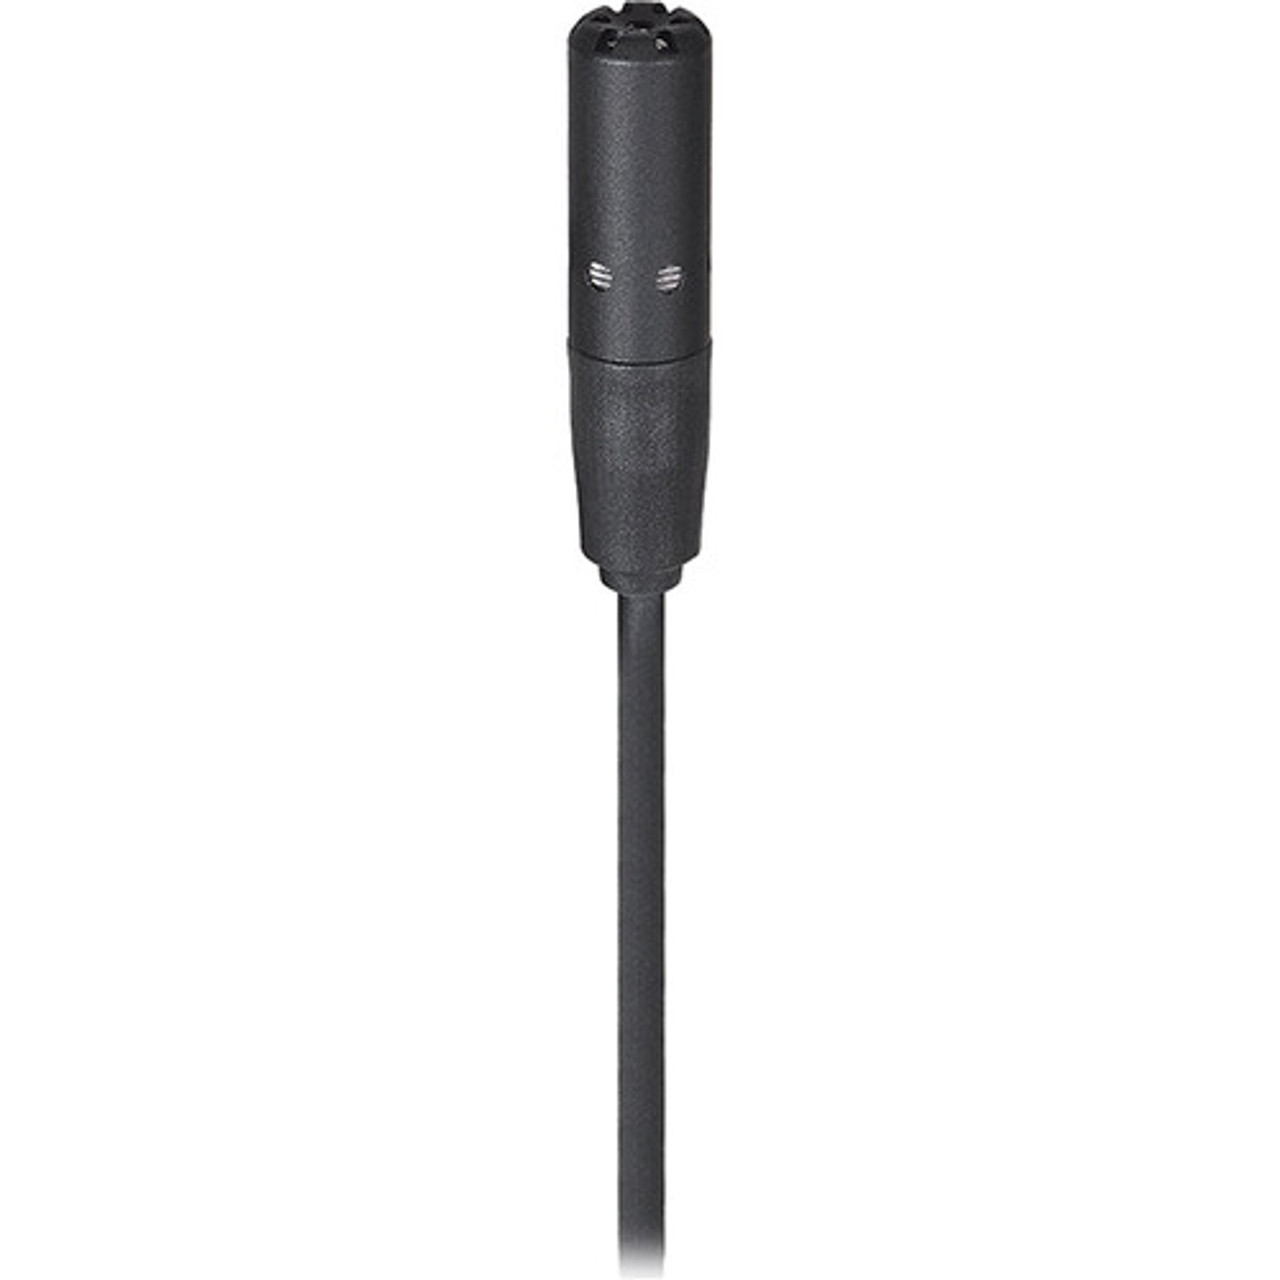 Audio-Technica BP898c Subminiature Cardioid Lavalier Microphone (Black, Unterminated) (BP898C)